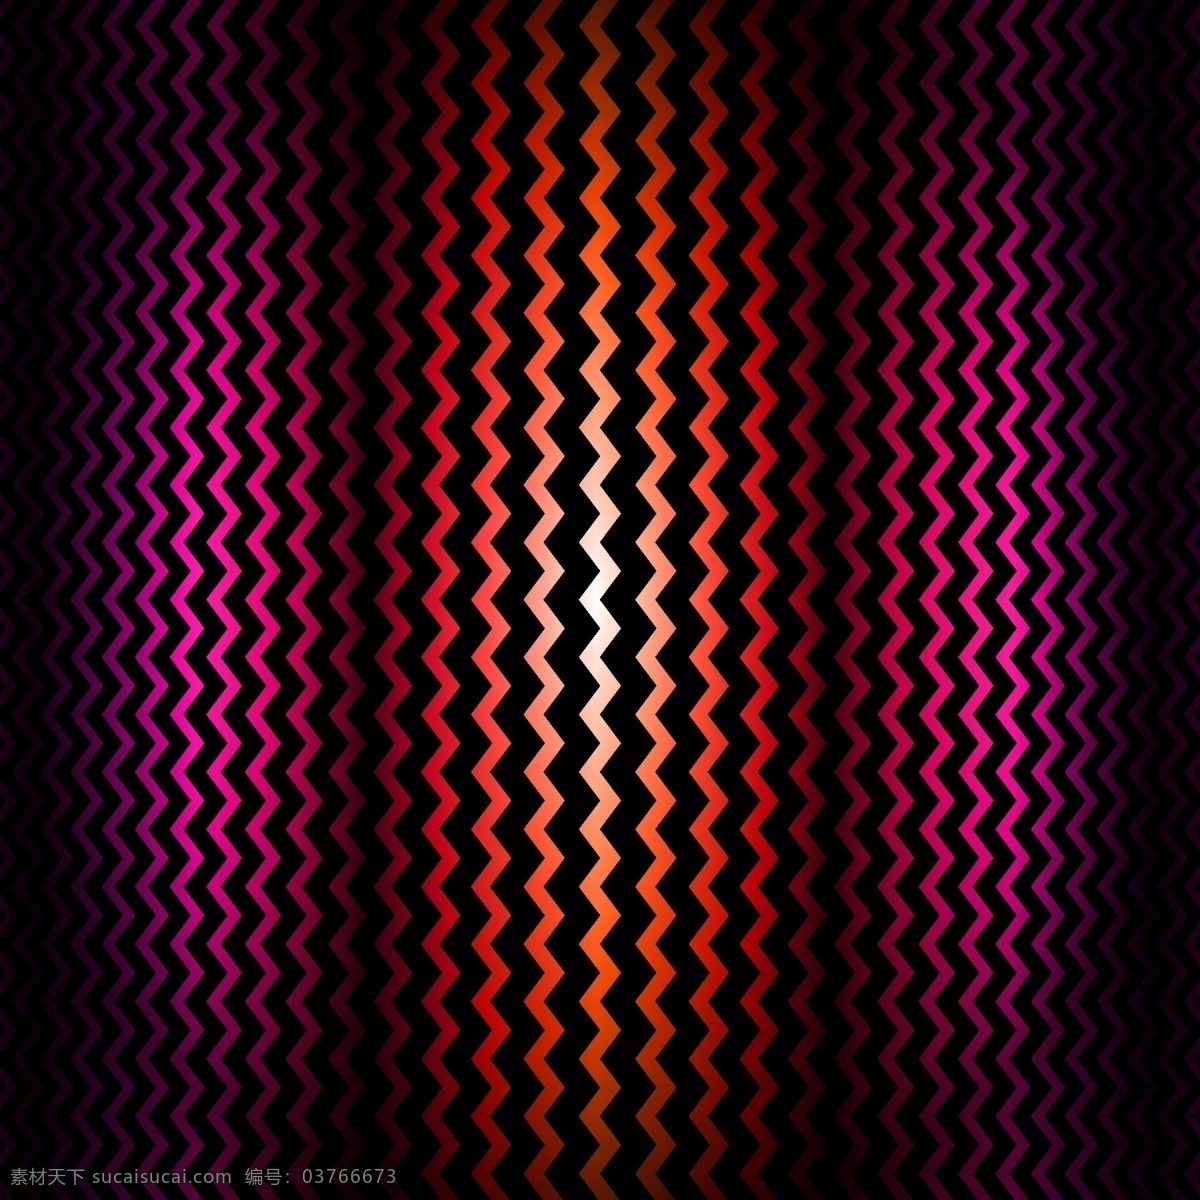 粉红 红色 背景 图案 抽象背景 抽象 几何 波浪 粉红色 壁纸 几何背景 矢量背景 几何图案 粉色背景 多边形 锯齿波 抽象波 黑色